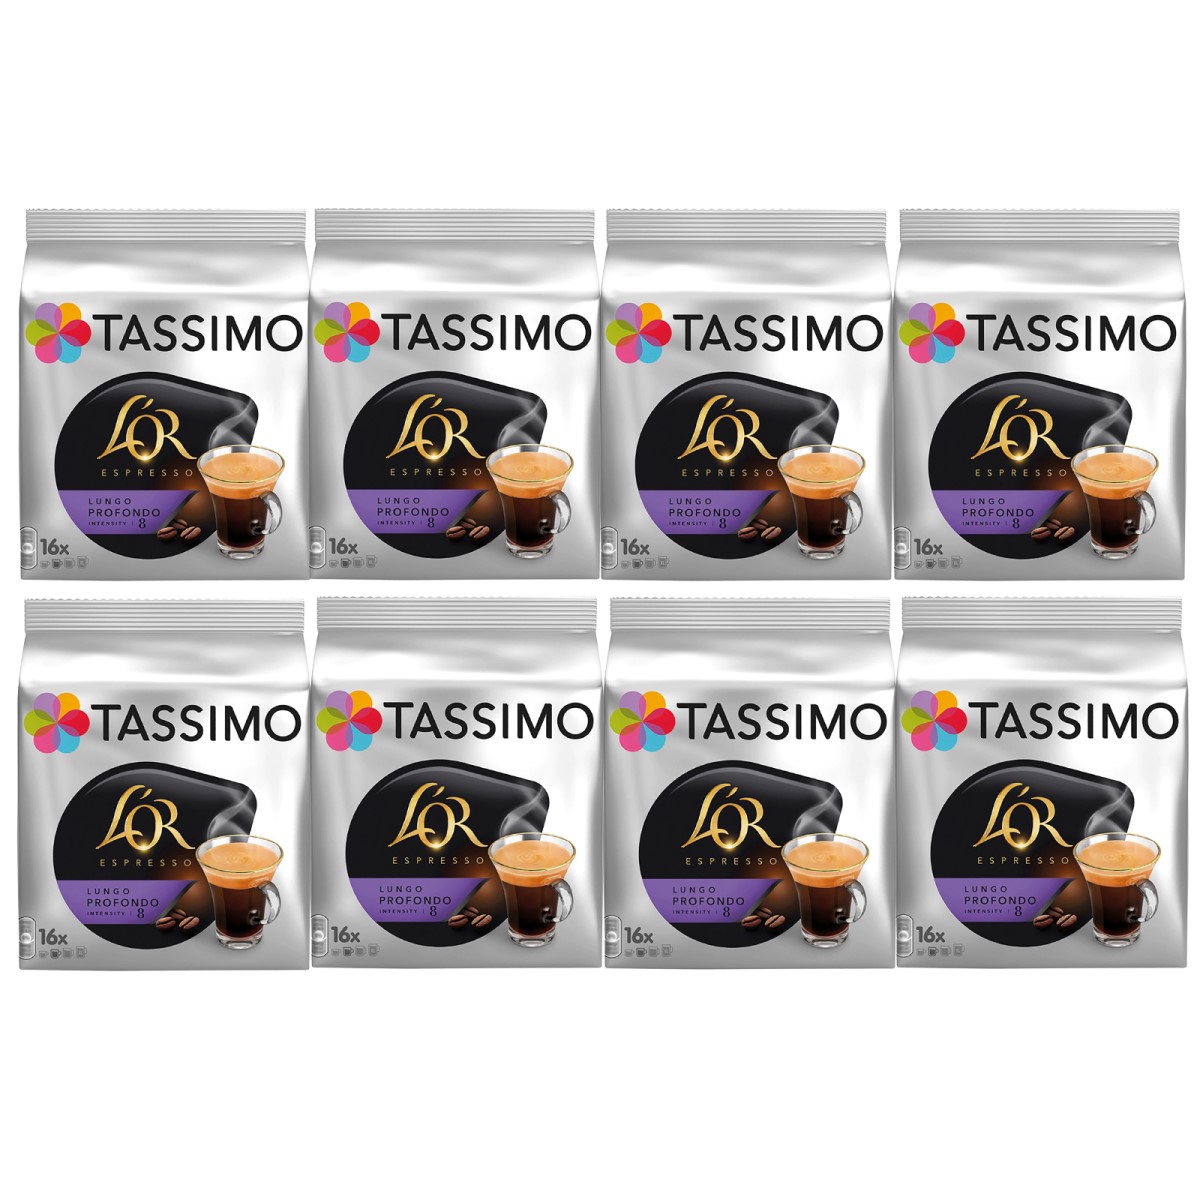 L'OR Fortissimo - 16 Cápsulas para Tassimo por 3,99 €